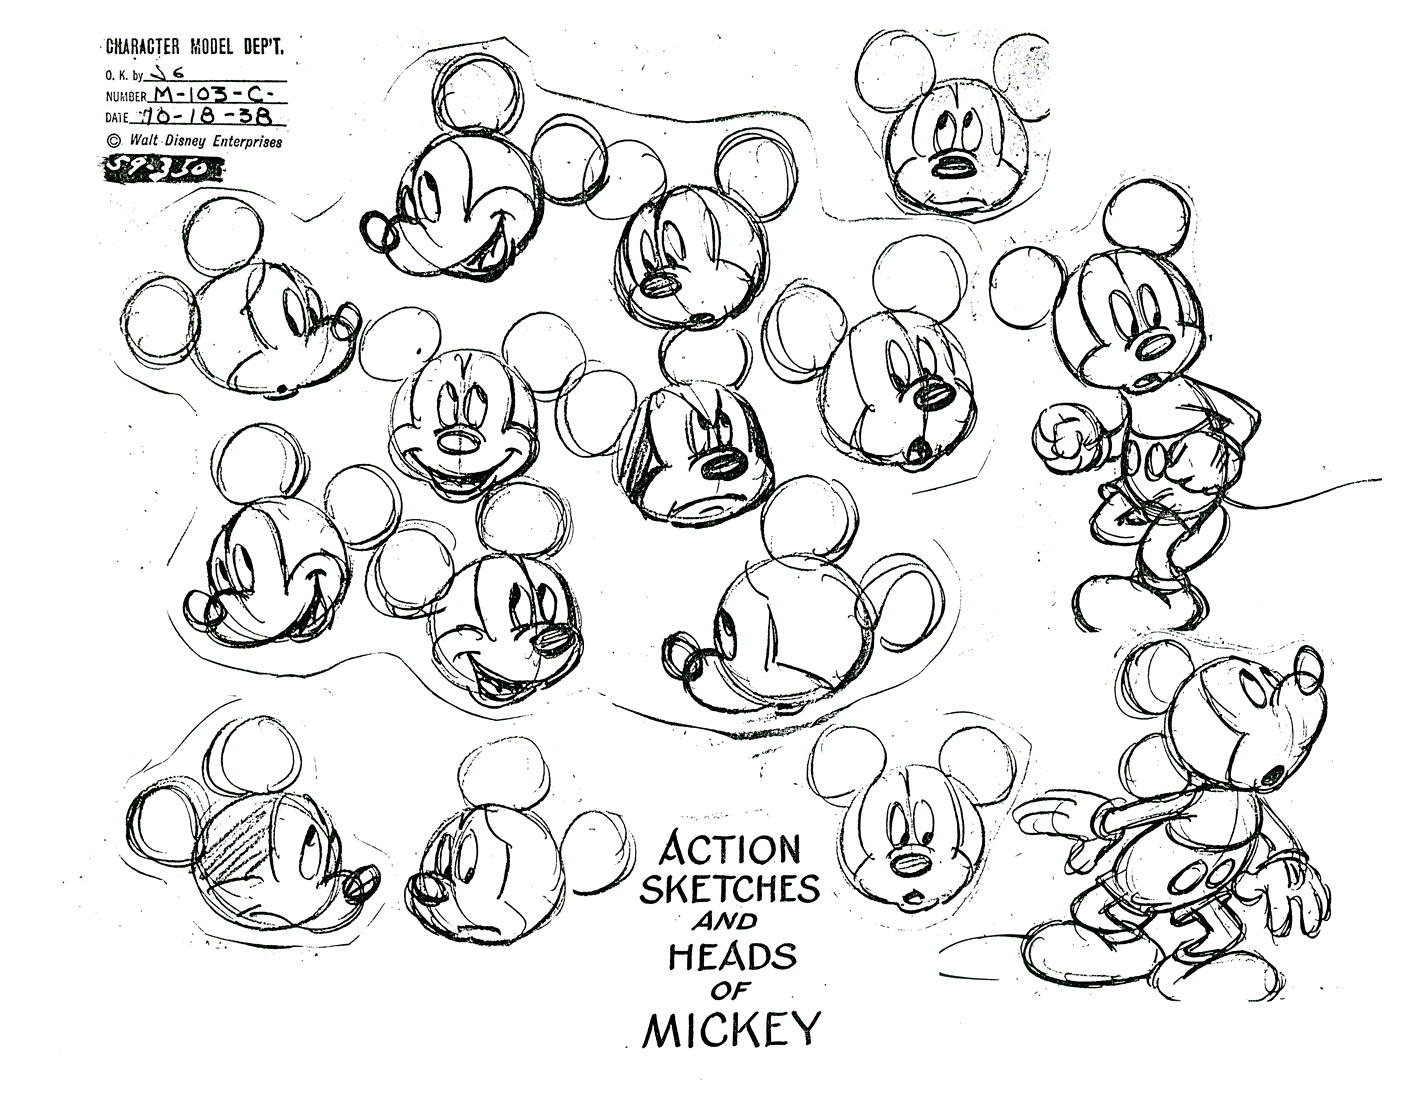 Malvorlage mit Mickeys Gesichtsausdrücken: glücklich, traurig, wütend, überrascht, schüchtern und viele andere